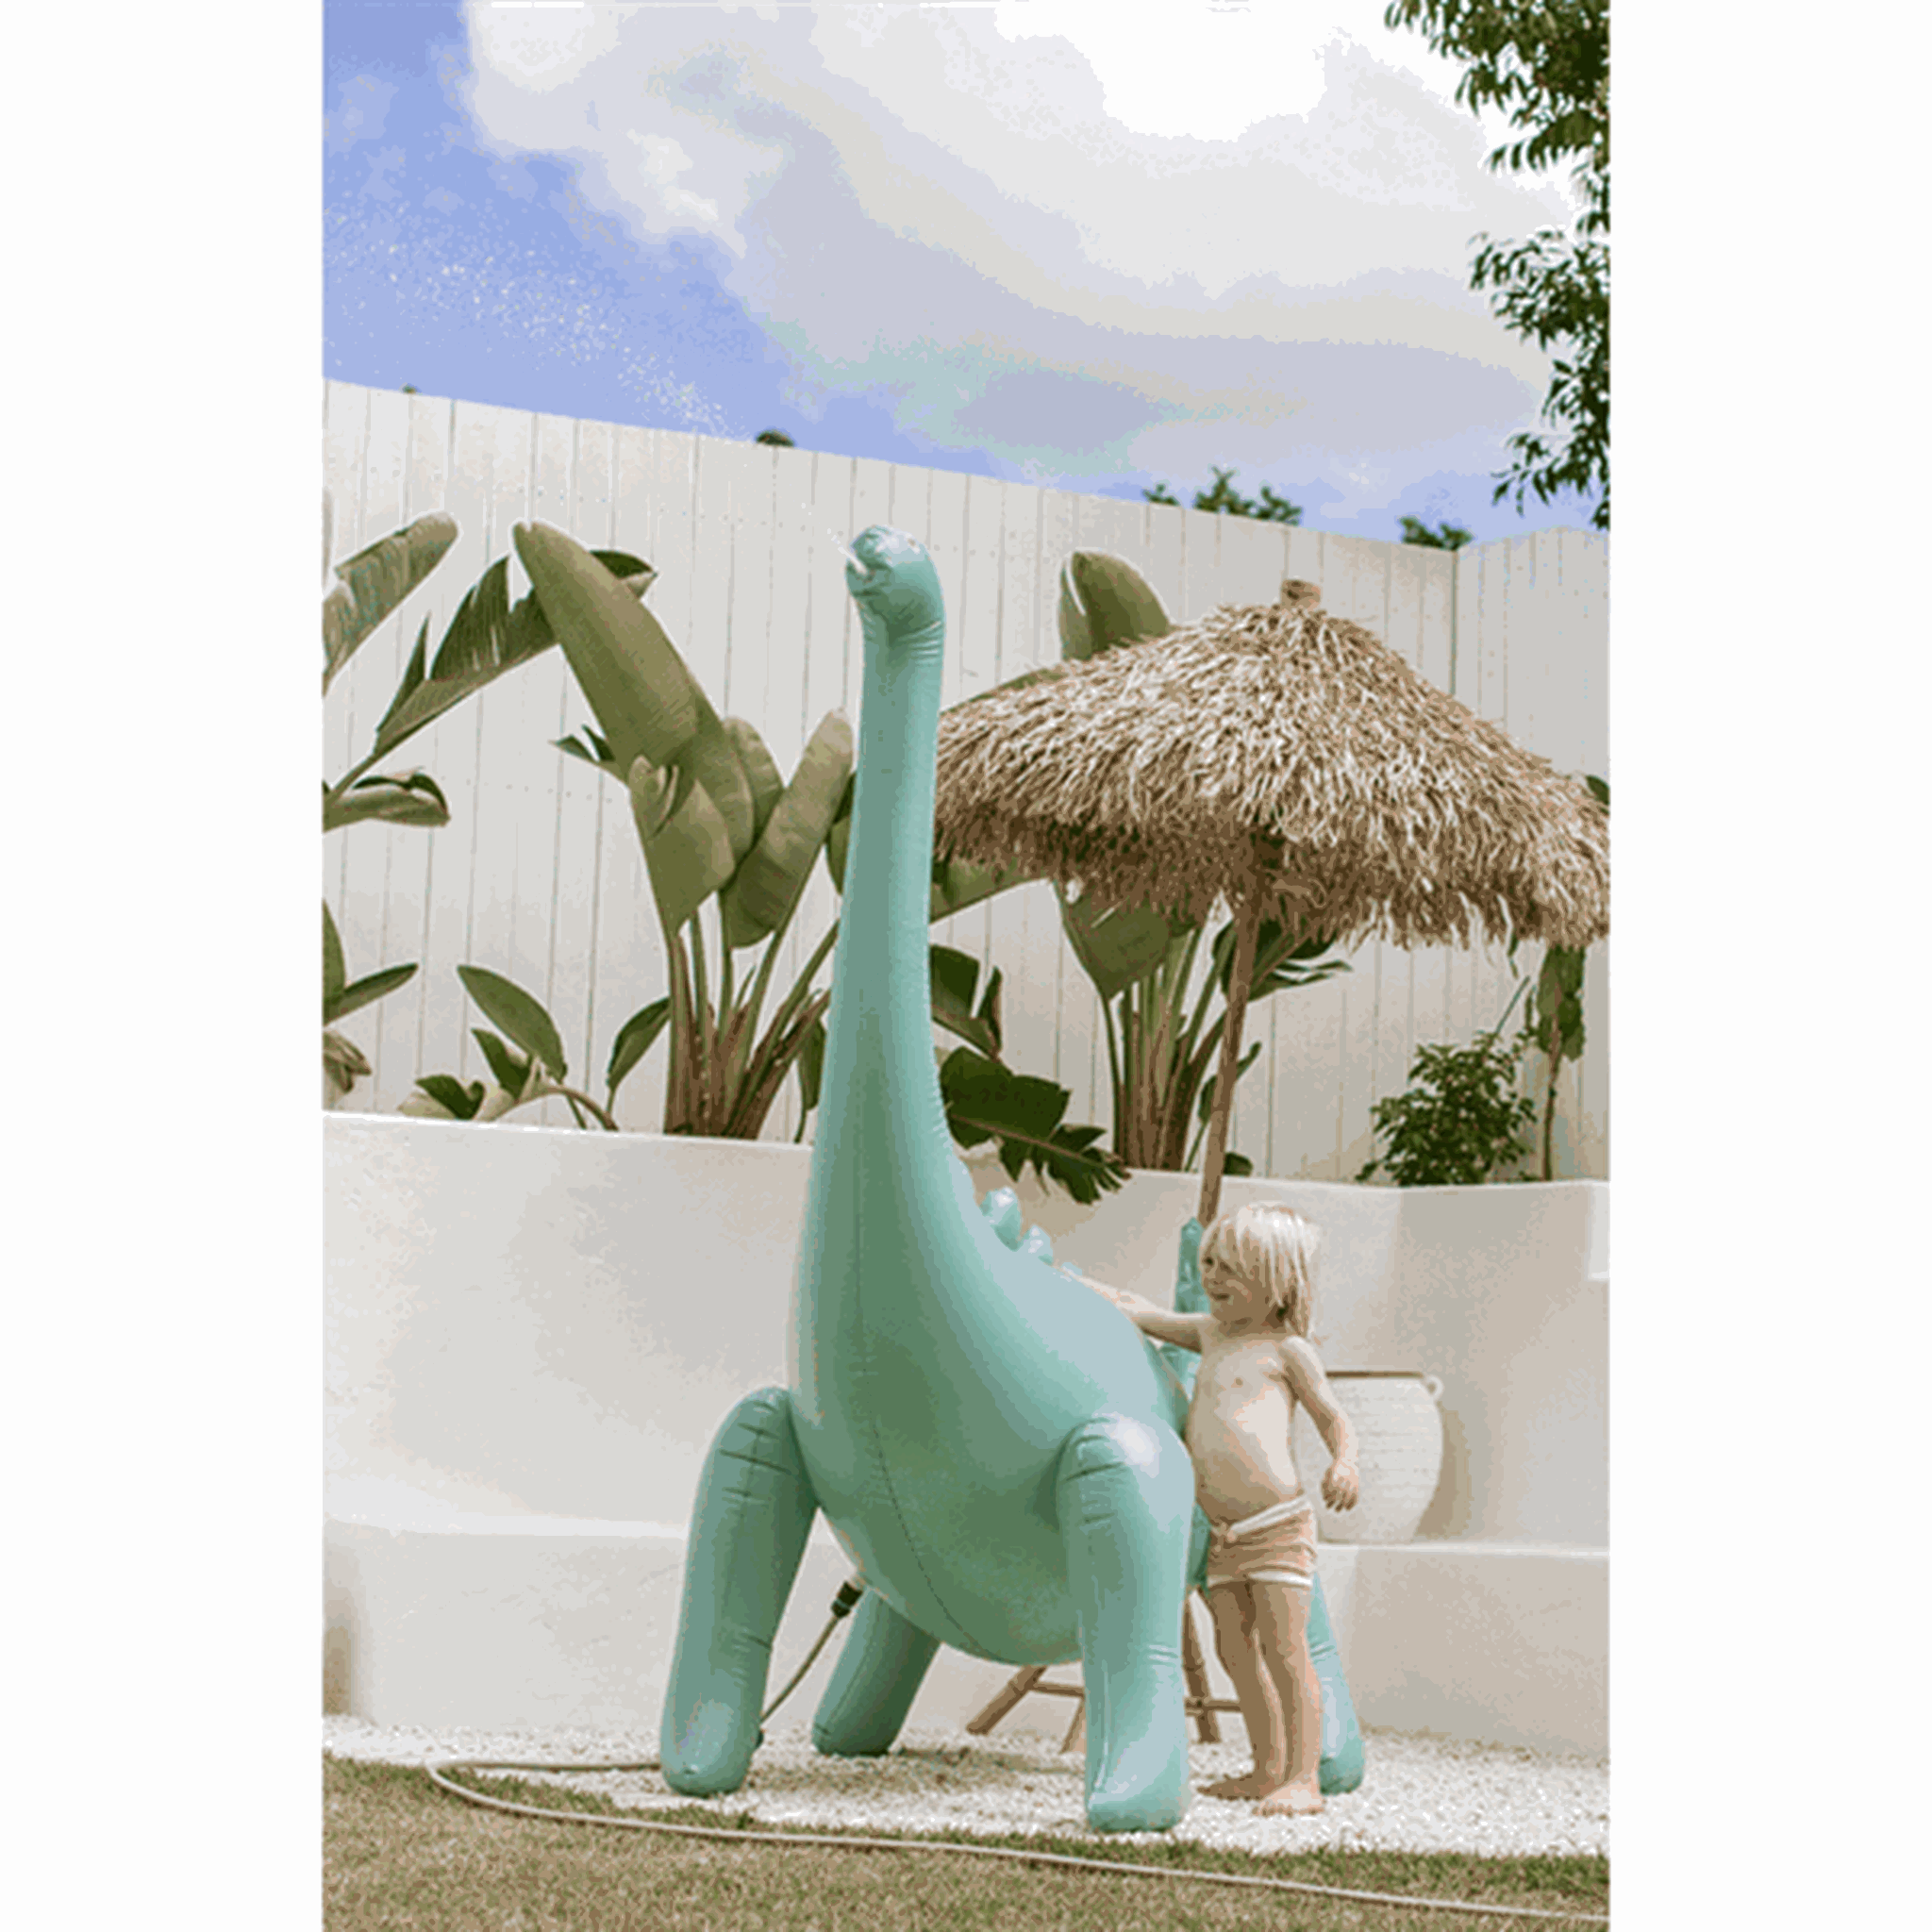 SunnyLife Inflatable Giant Sprinkler Dinosaur 2